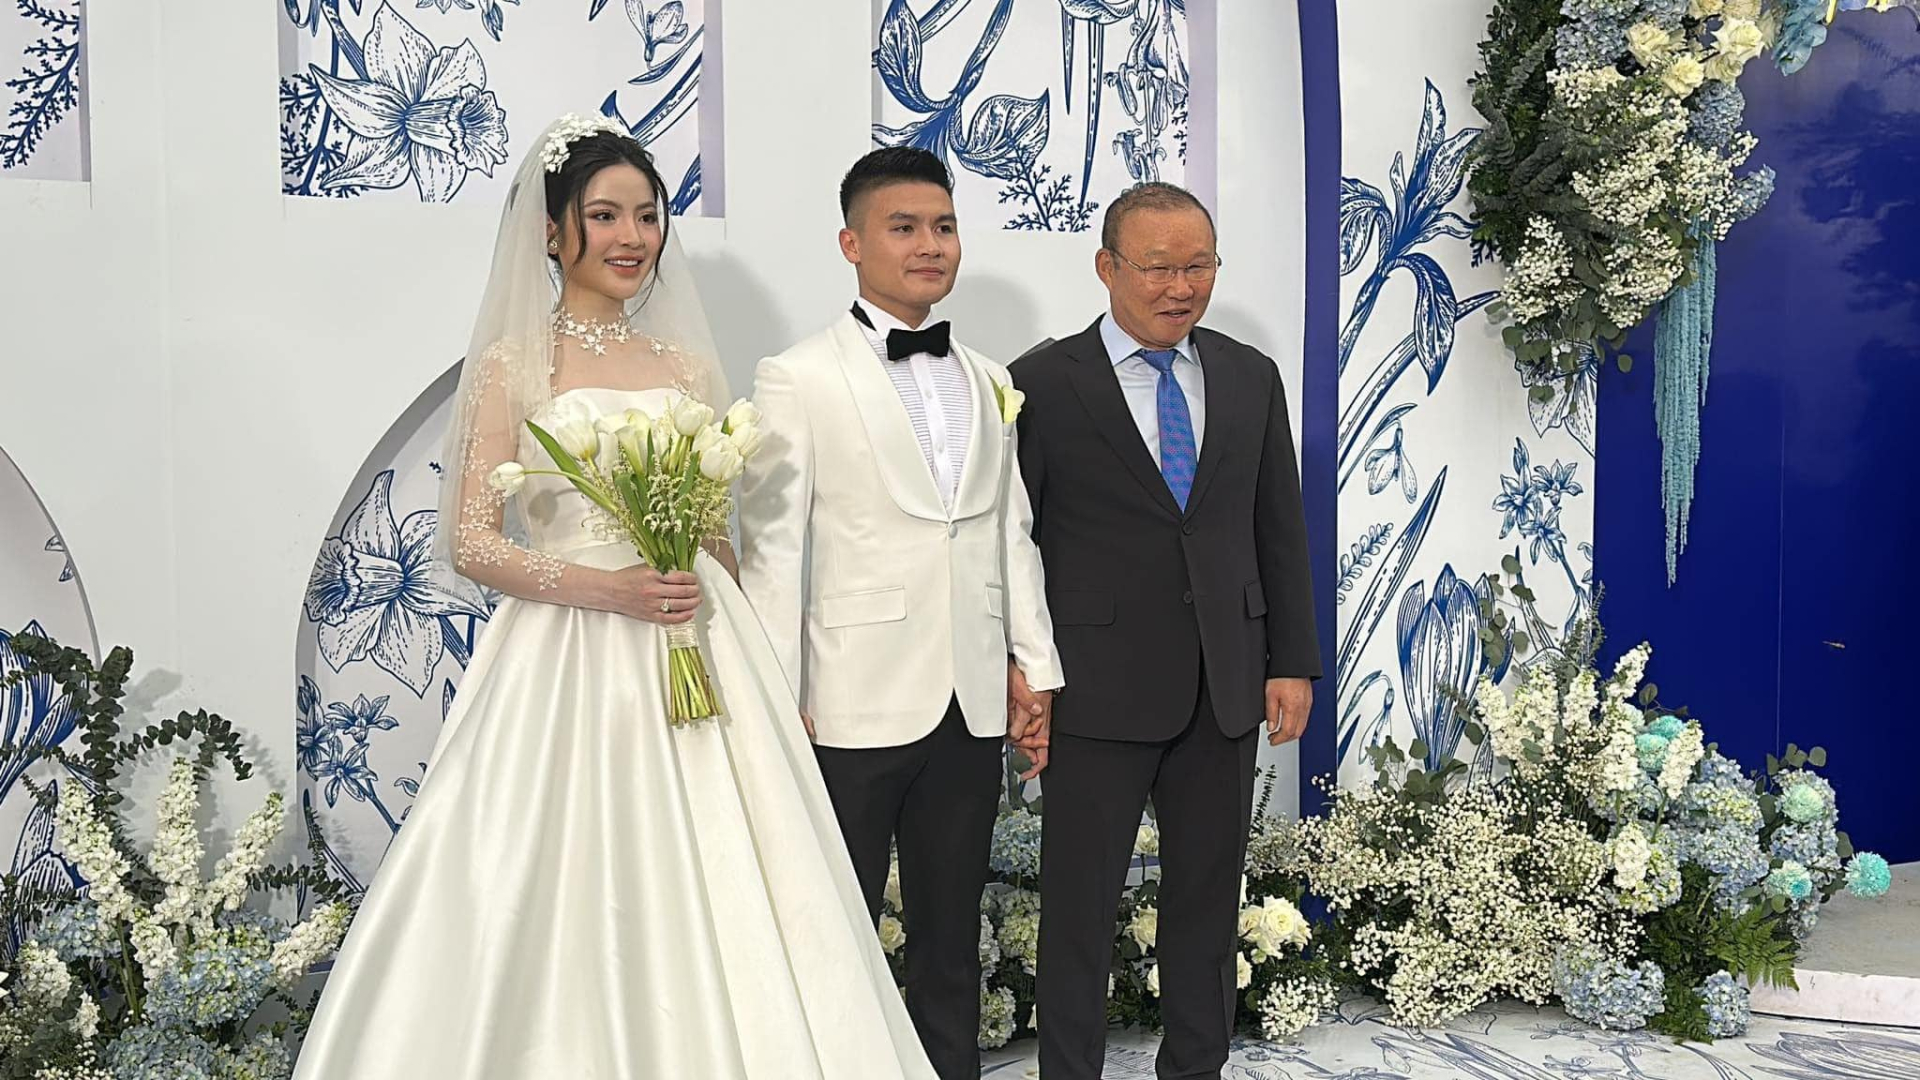 Doãn Hải My theo chồng đến dự đám cưới Quang Hải, cô dâu Chu Thanh Huyền có thái độ sượng trân gây chú ý - ảnh 2